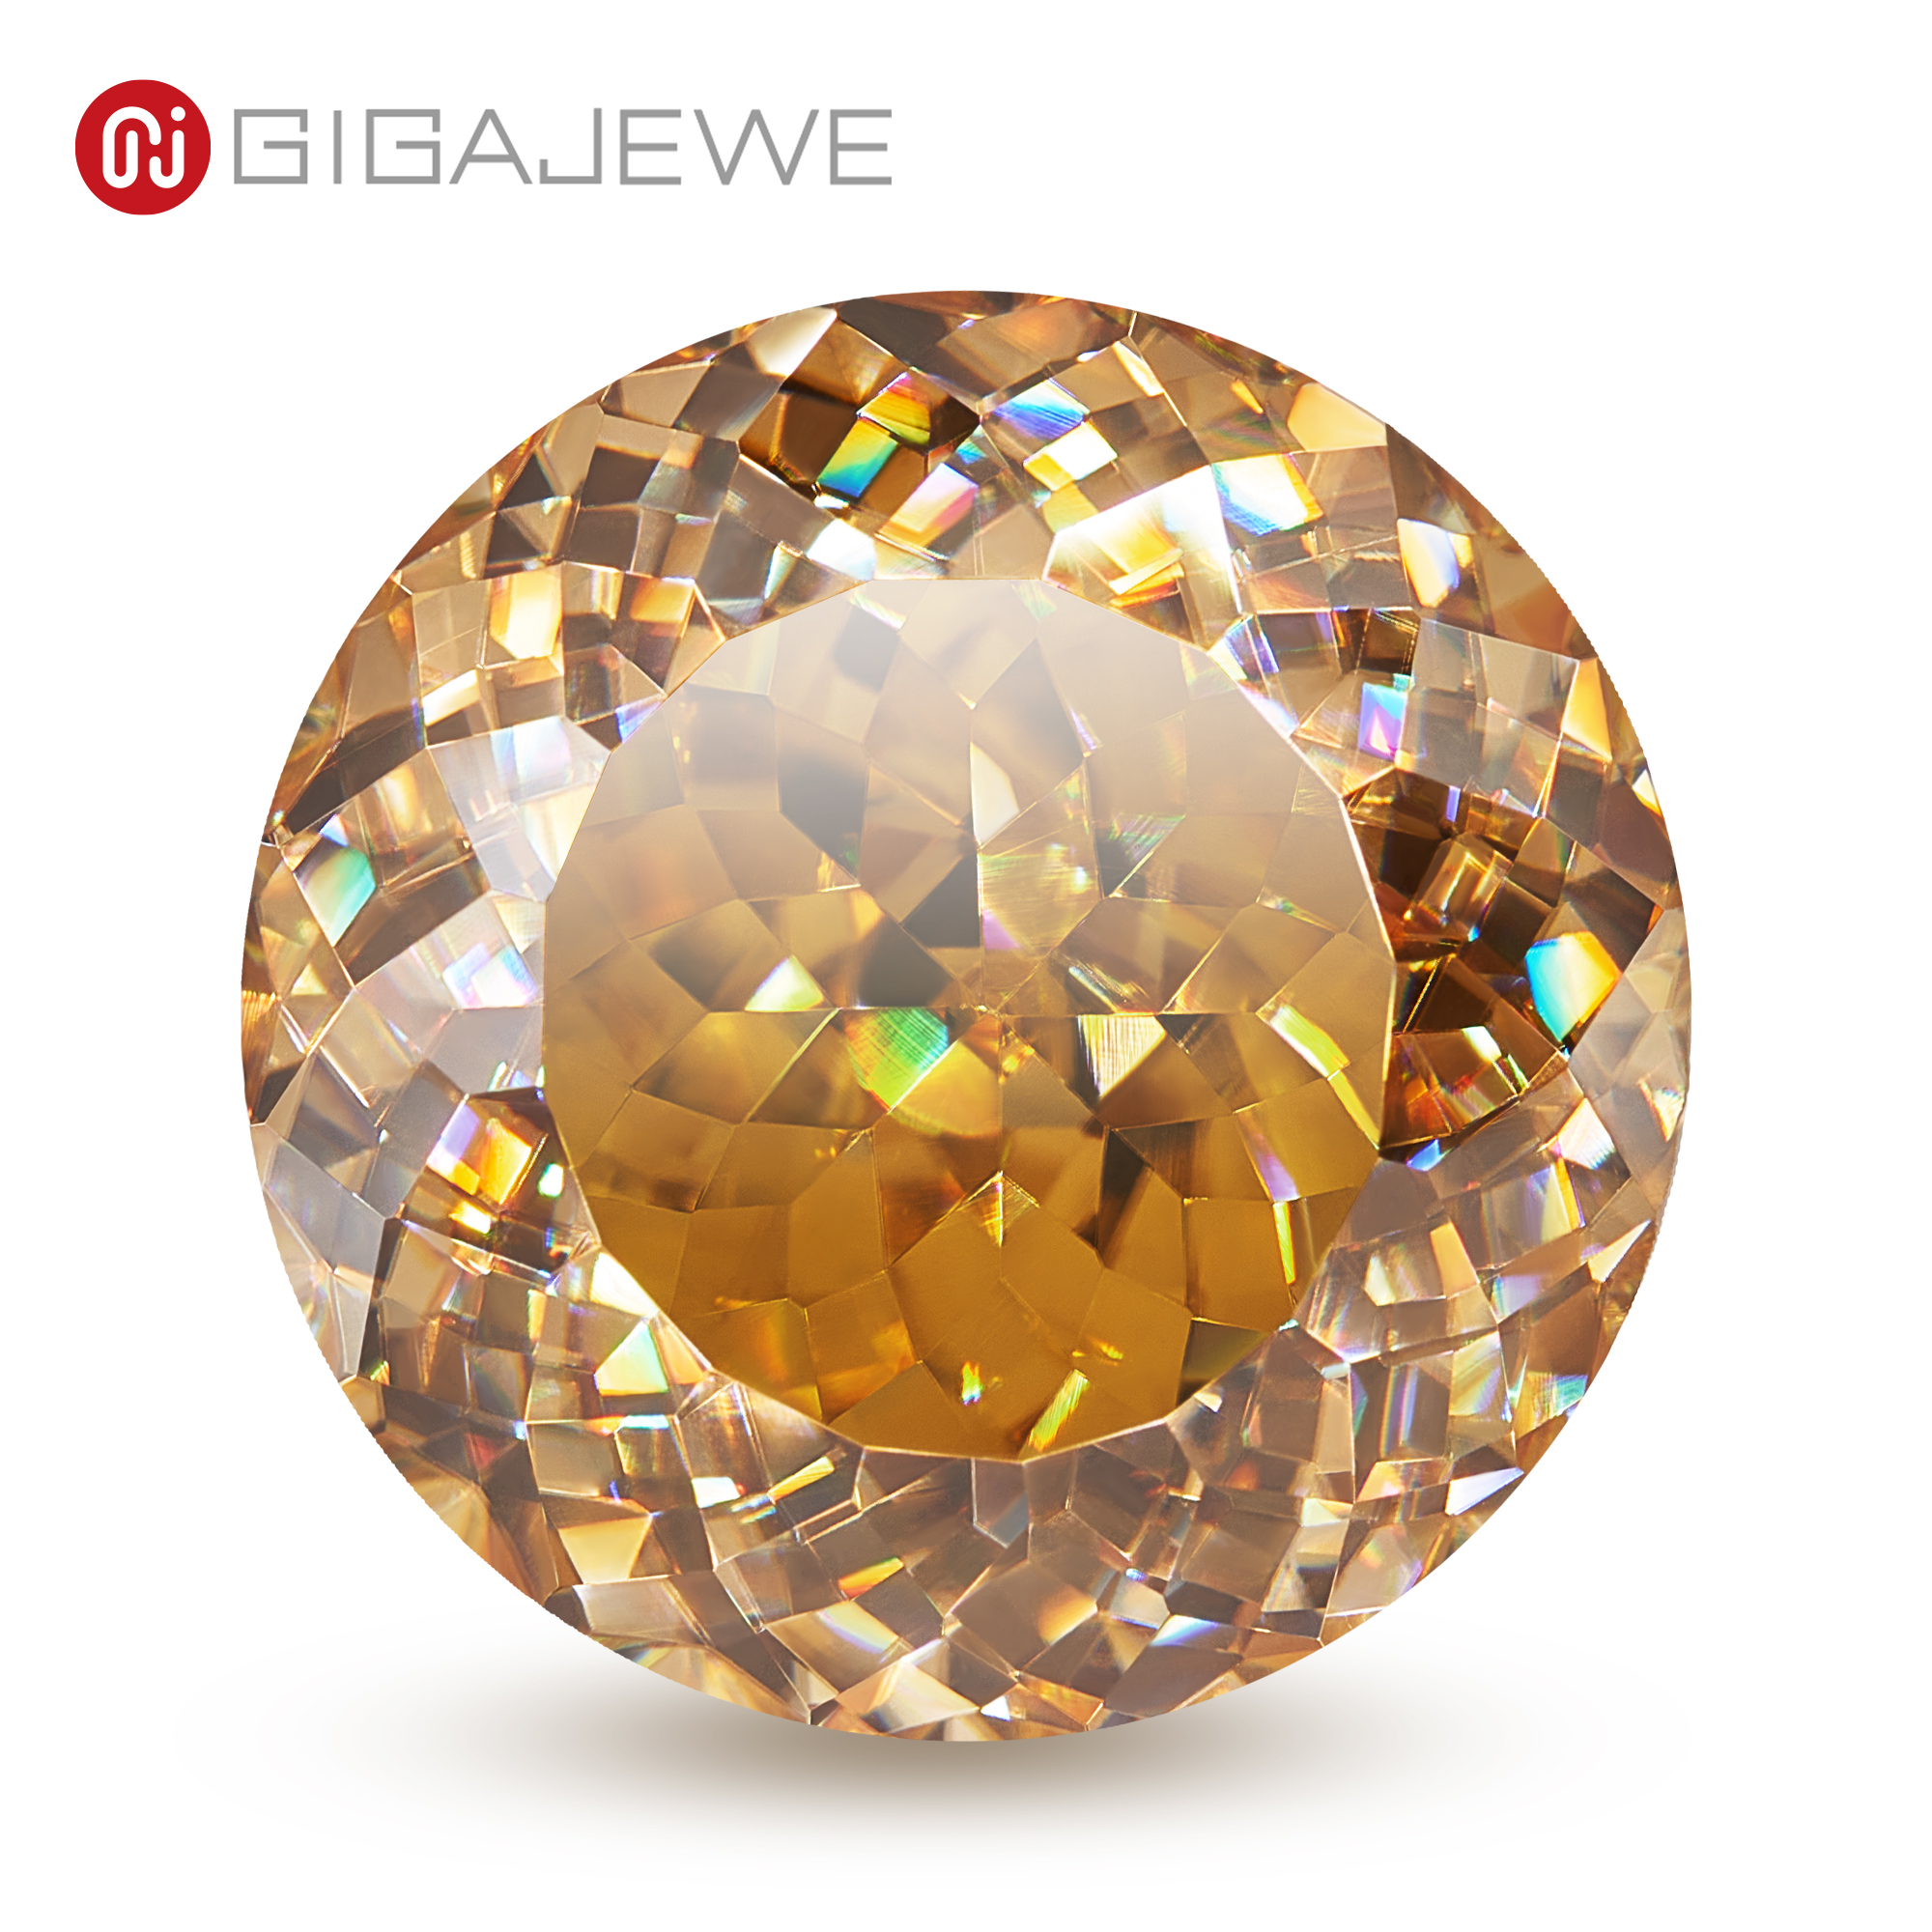 Gigajewe moissanite personalizado português cor dourado VVS1 teste de diamante solto passou pedra preciosa para fazer jóias